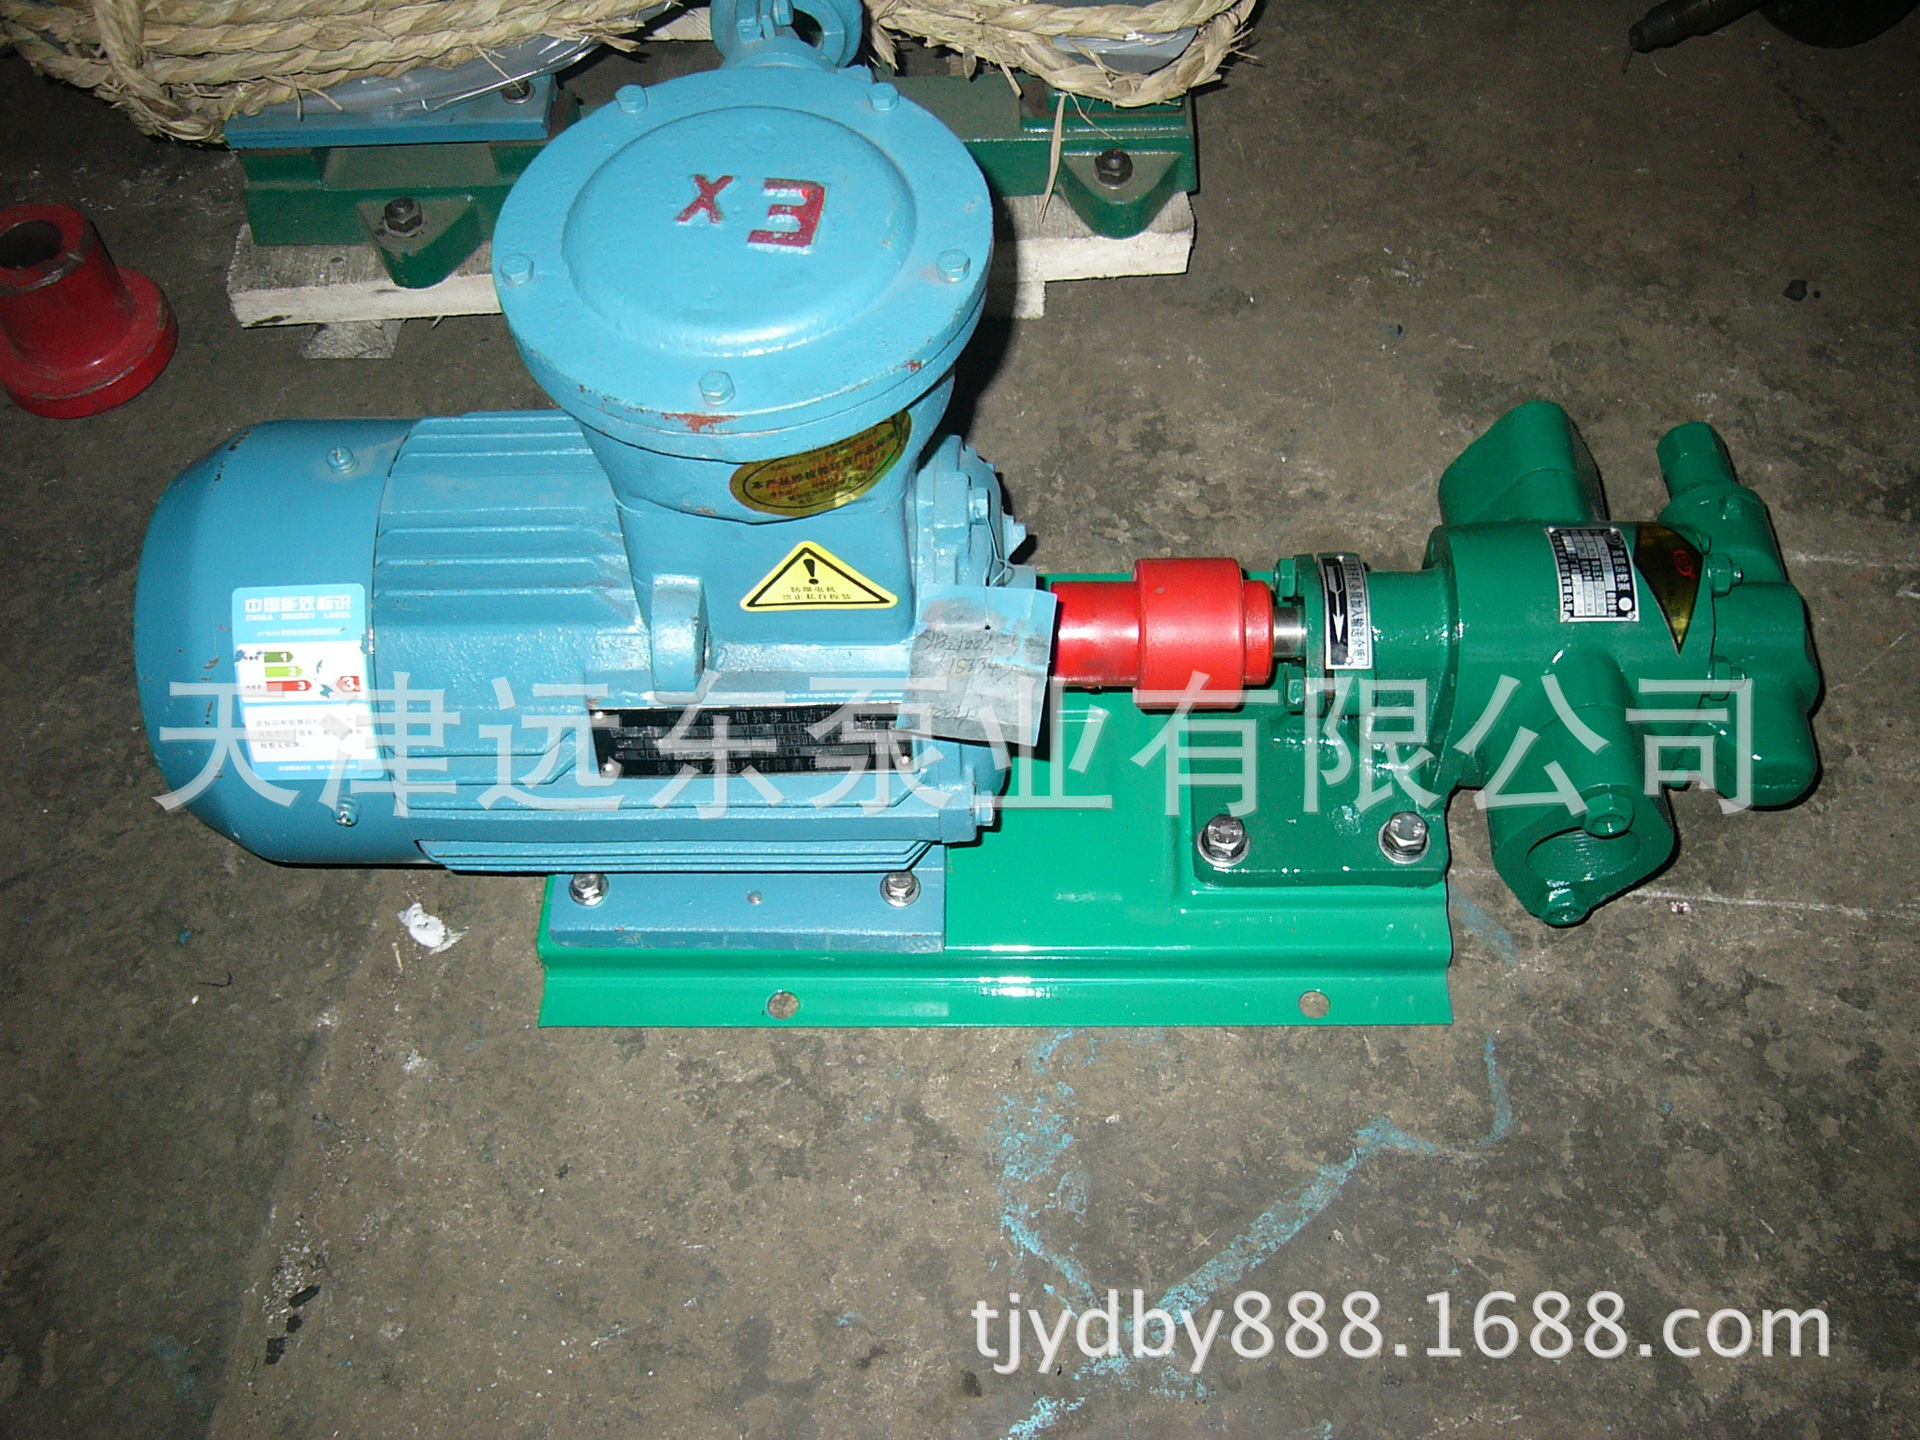 天津远东 KCB-83.3齿轮油泵 润滑油齿轮泵  远东齿轮泵厂家直销示例图3